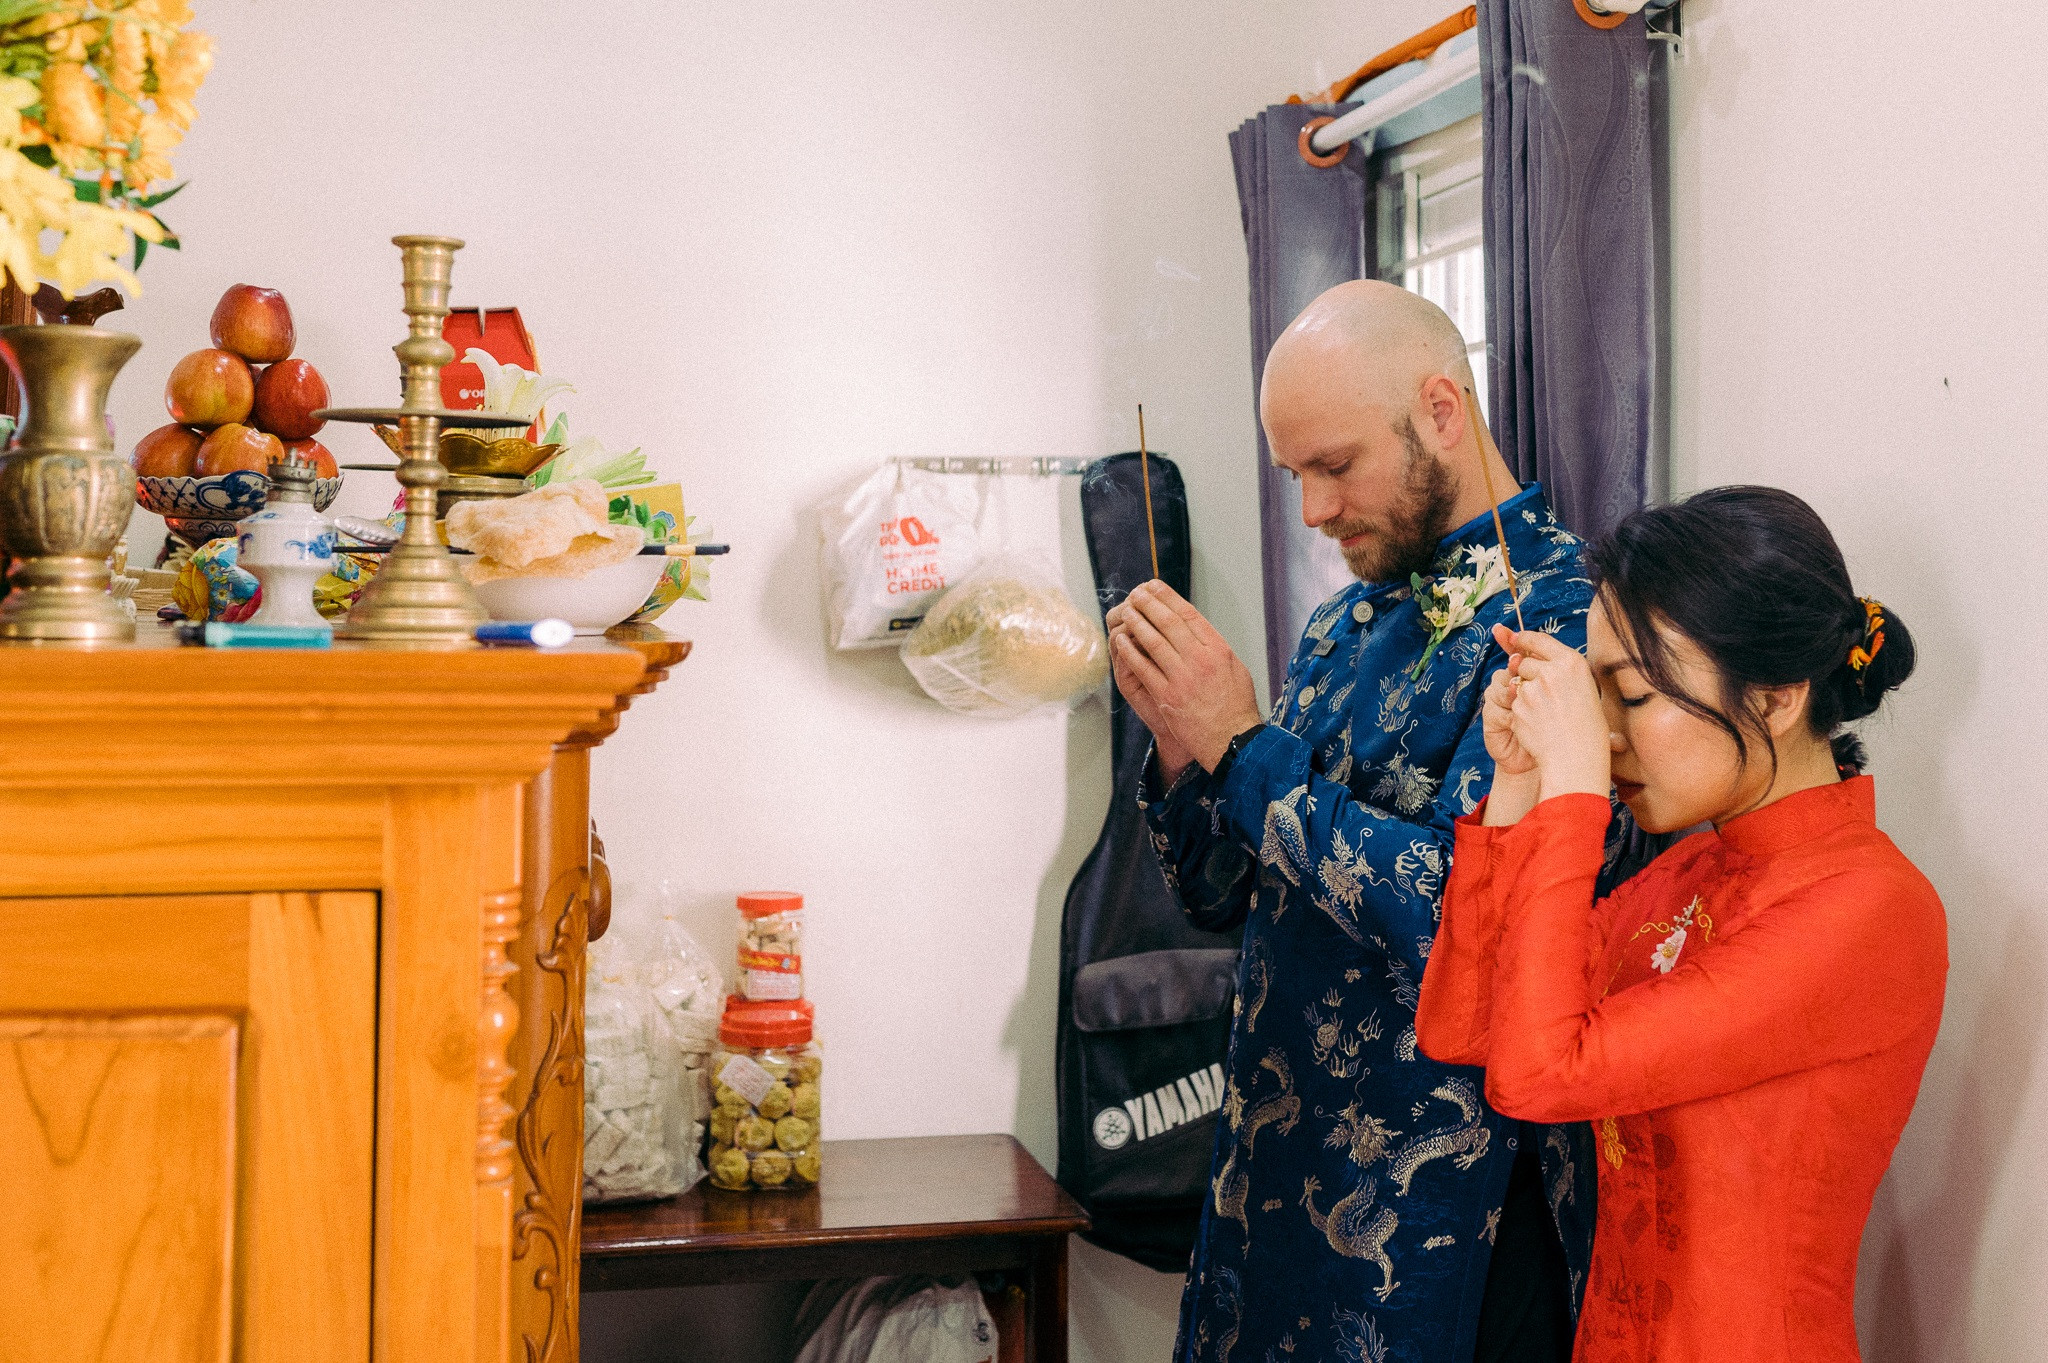 Đám cưới cây nhà lá vườn của vợ Việt, chồng Tây gây sốt mạng xã hội - 2